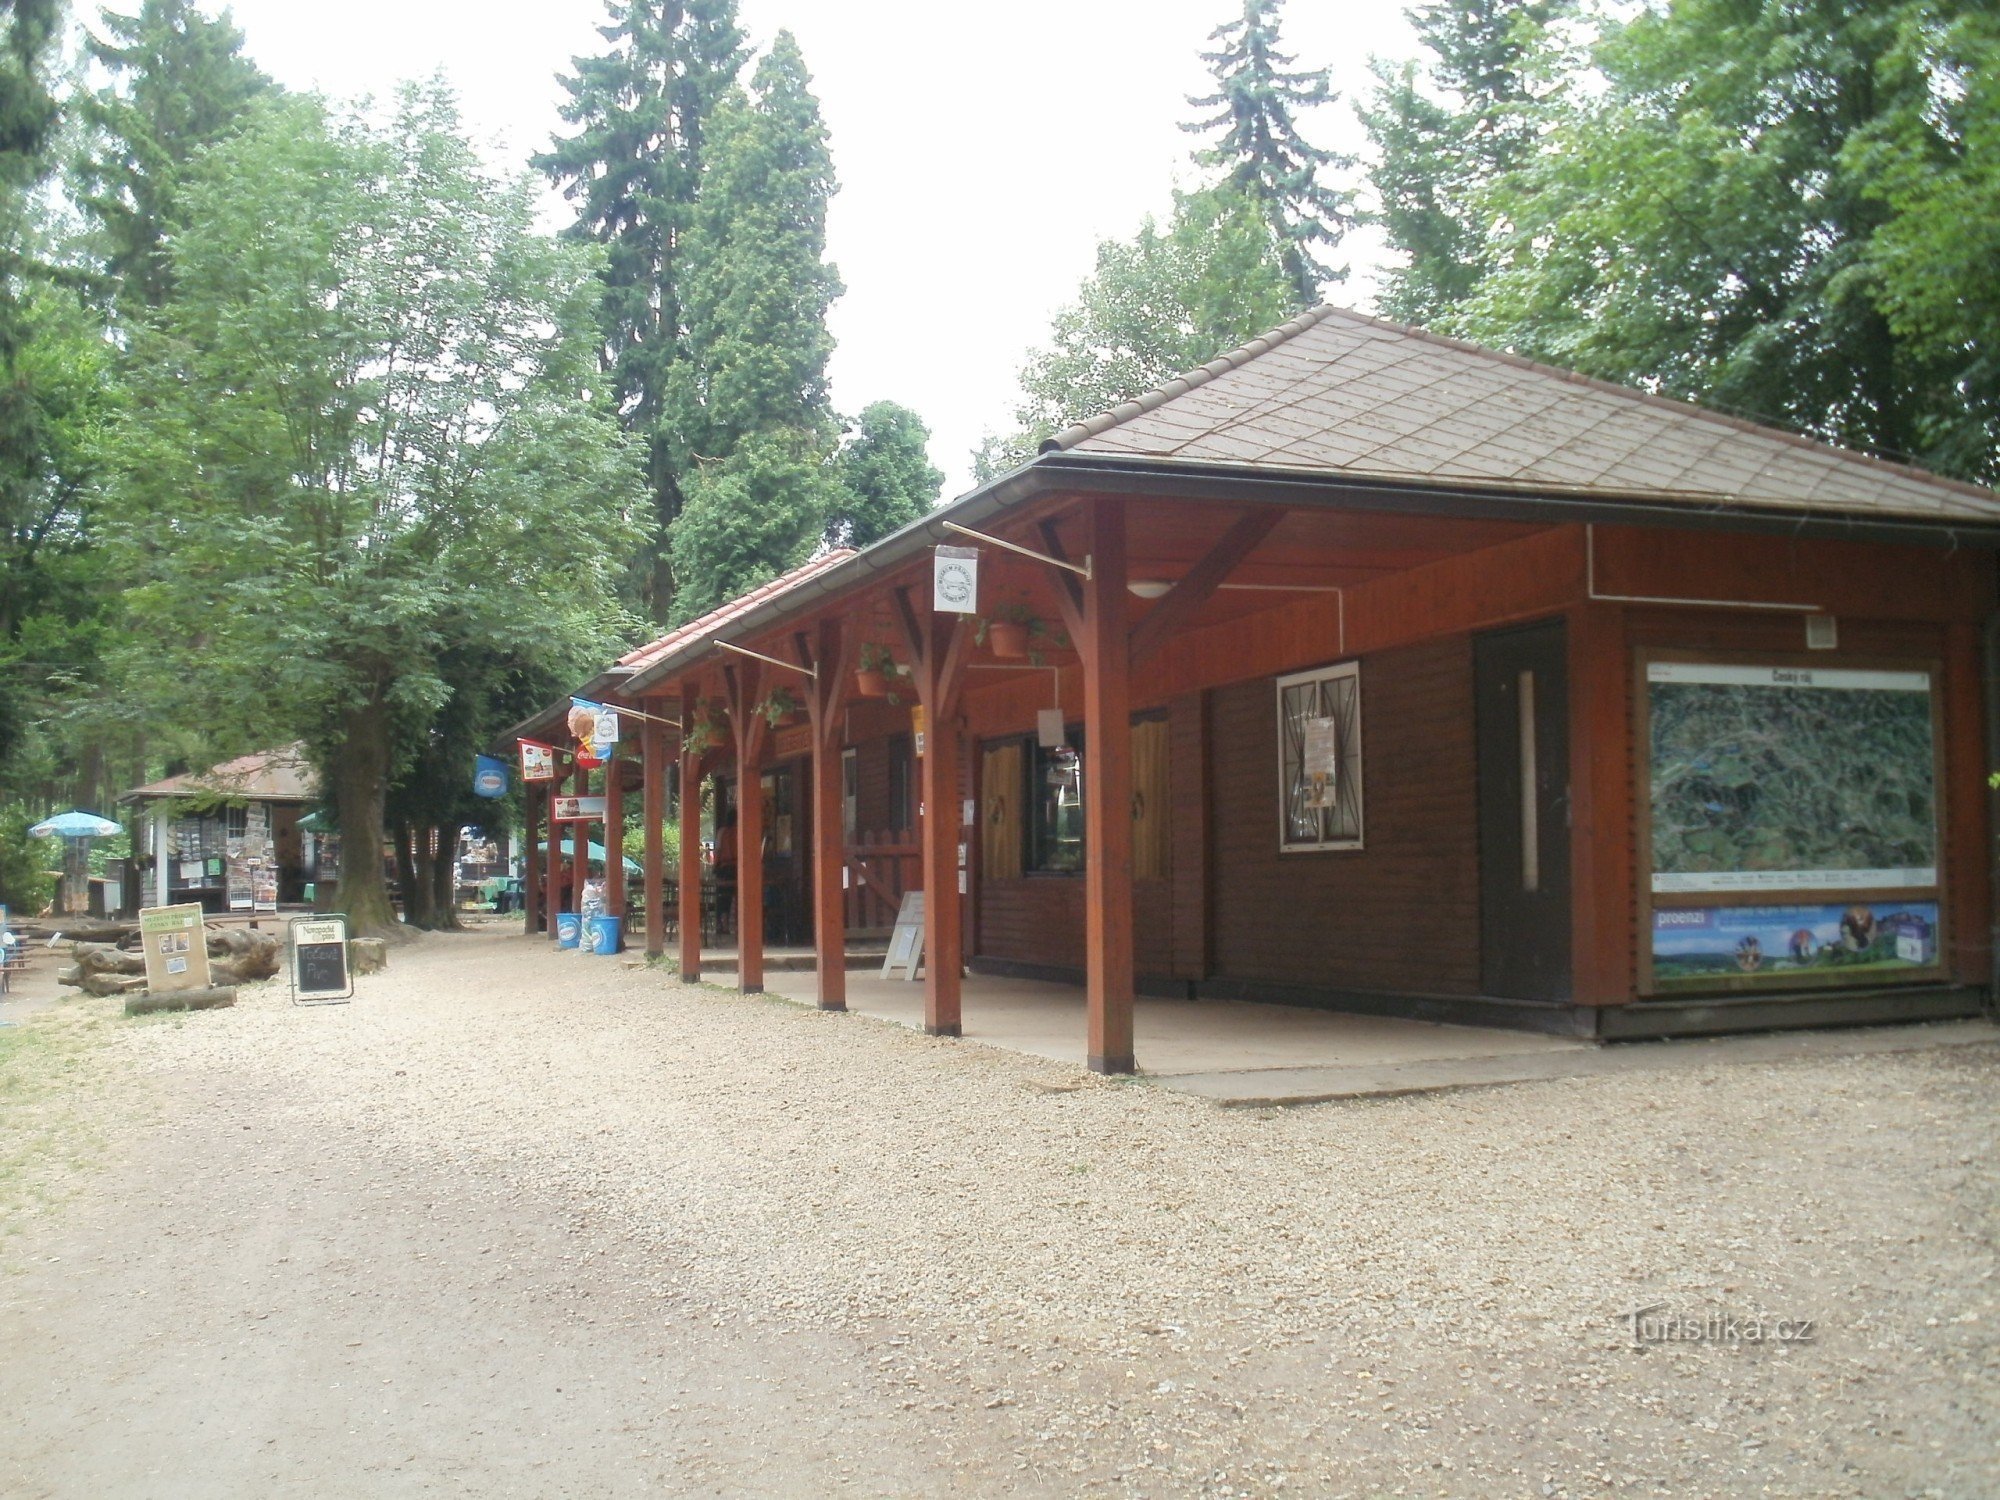 Prachov - centro turístico Bohemian Paradise, centro de informações